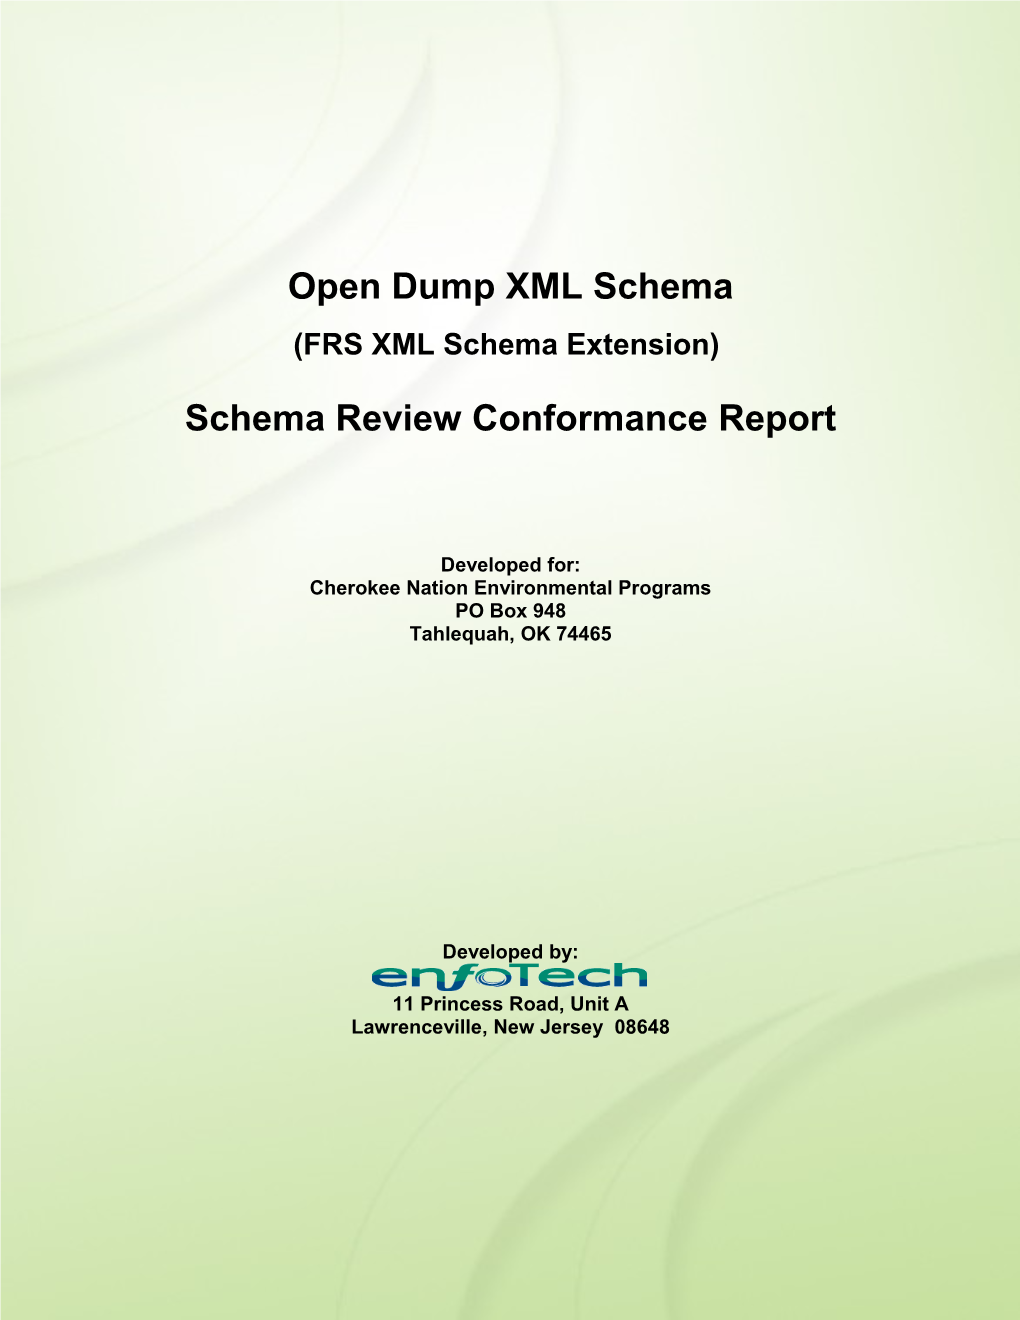 EPA Office of Water - Water Quality Exchange (OWWQX) XML Schema Version 1